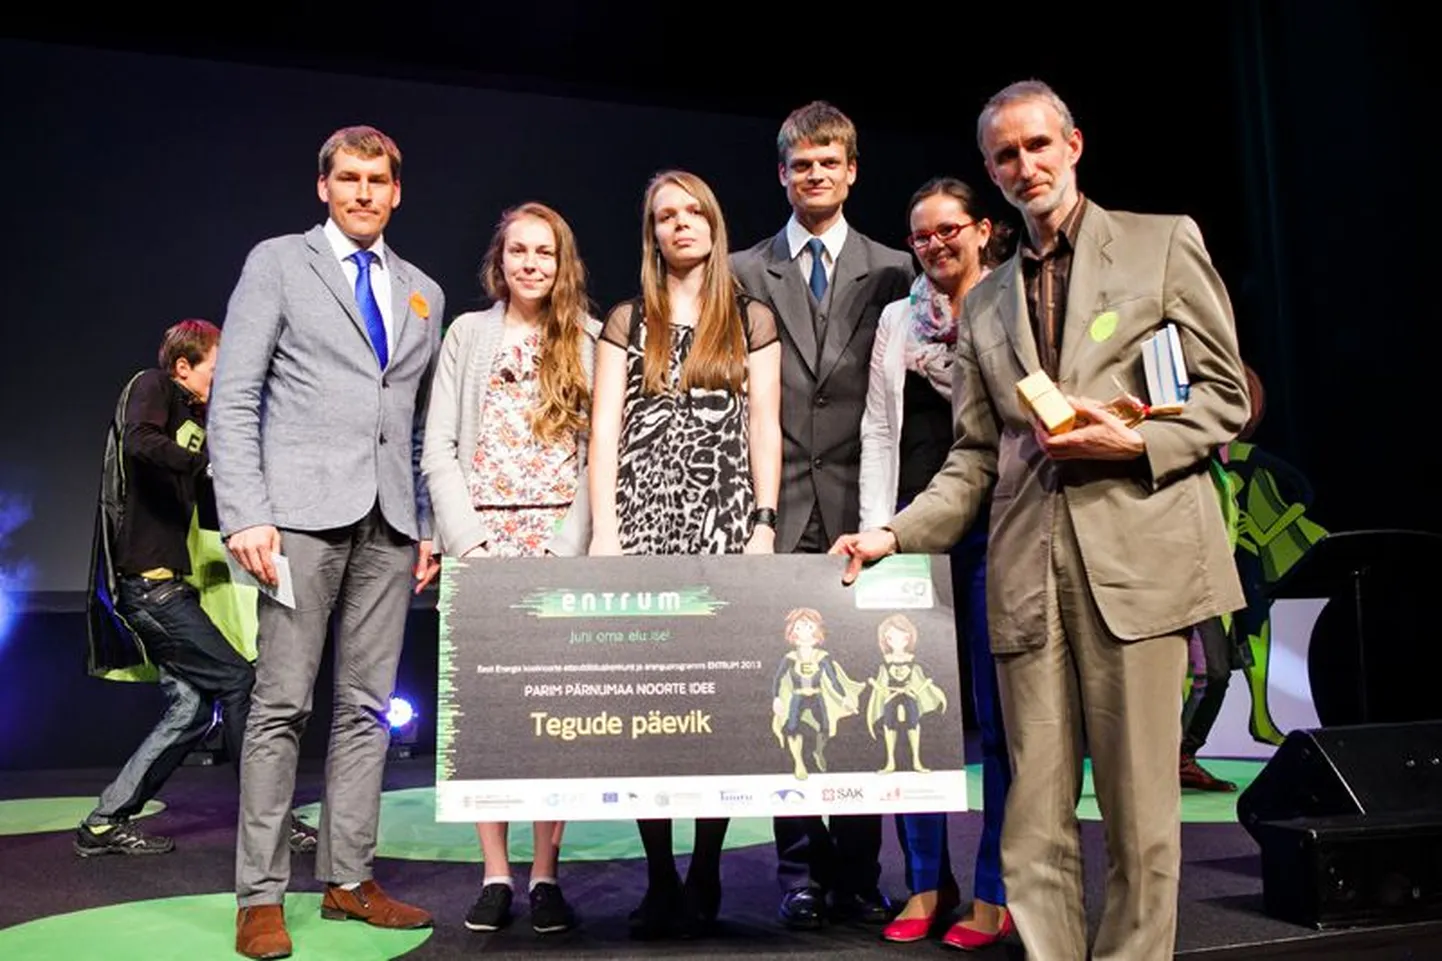 Noorteprogrammi ENTRUM auhinnagalal tunnistati Pärnumaa parimaks projektiks "Tegude päevik". Pildil võitjameeskond koos Pärnu maavanema Andres Metsojaga.